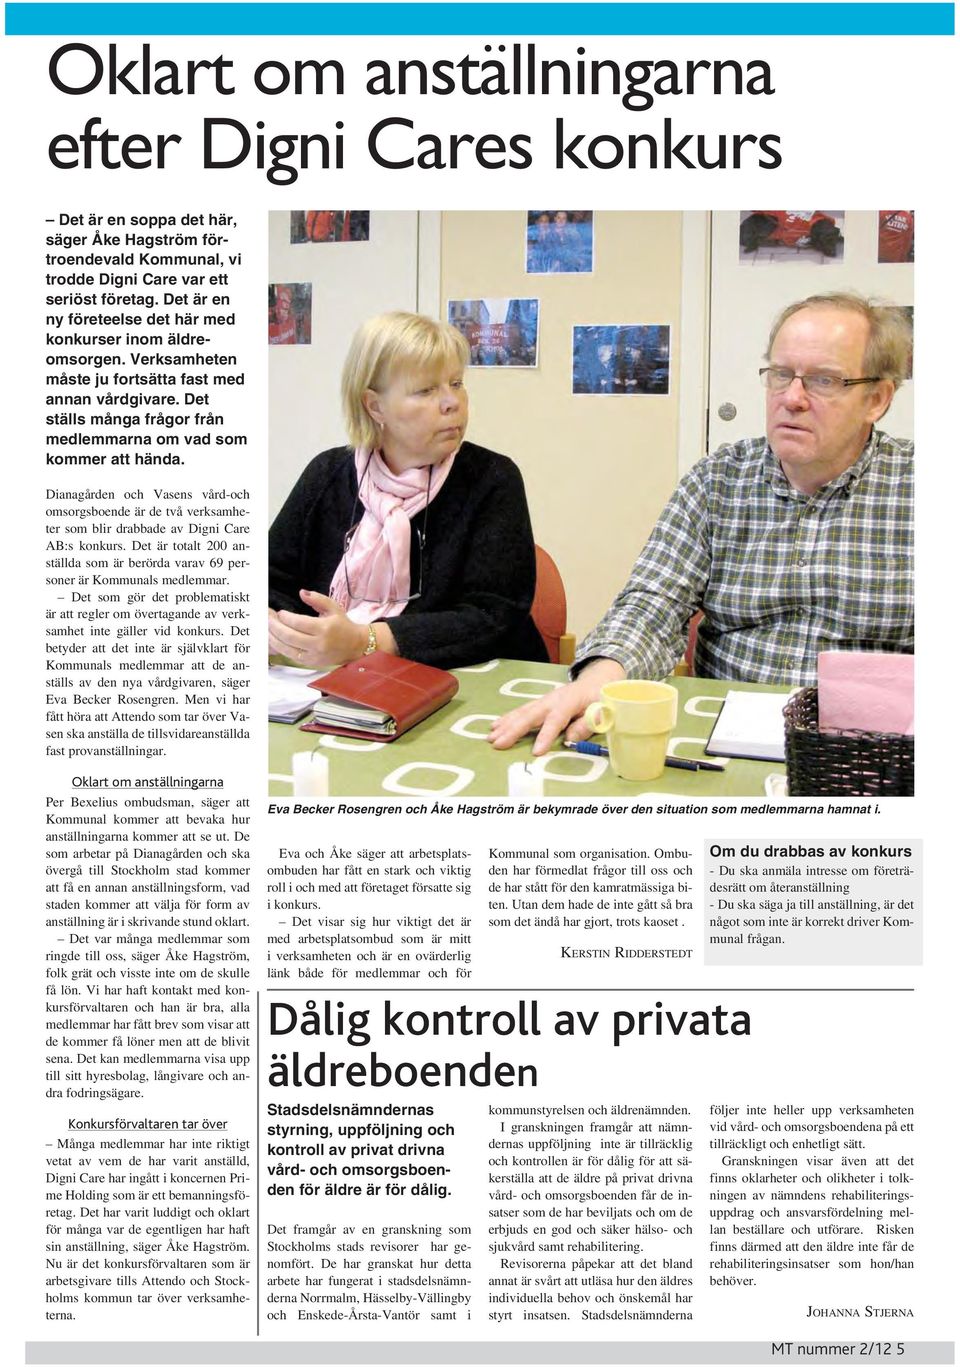 Dianagården och Vasens vård-och omsorgsboende är de två verksamheter som blir drabbade av Digni Care AB:s konkurs. Det är totalt 200 anställda som är berörda varav 69 personer är Kommunals medlemmar.